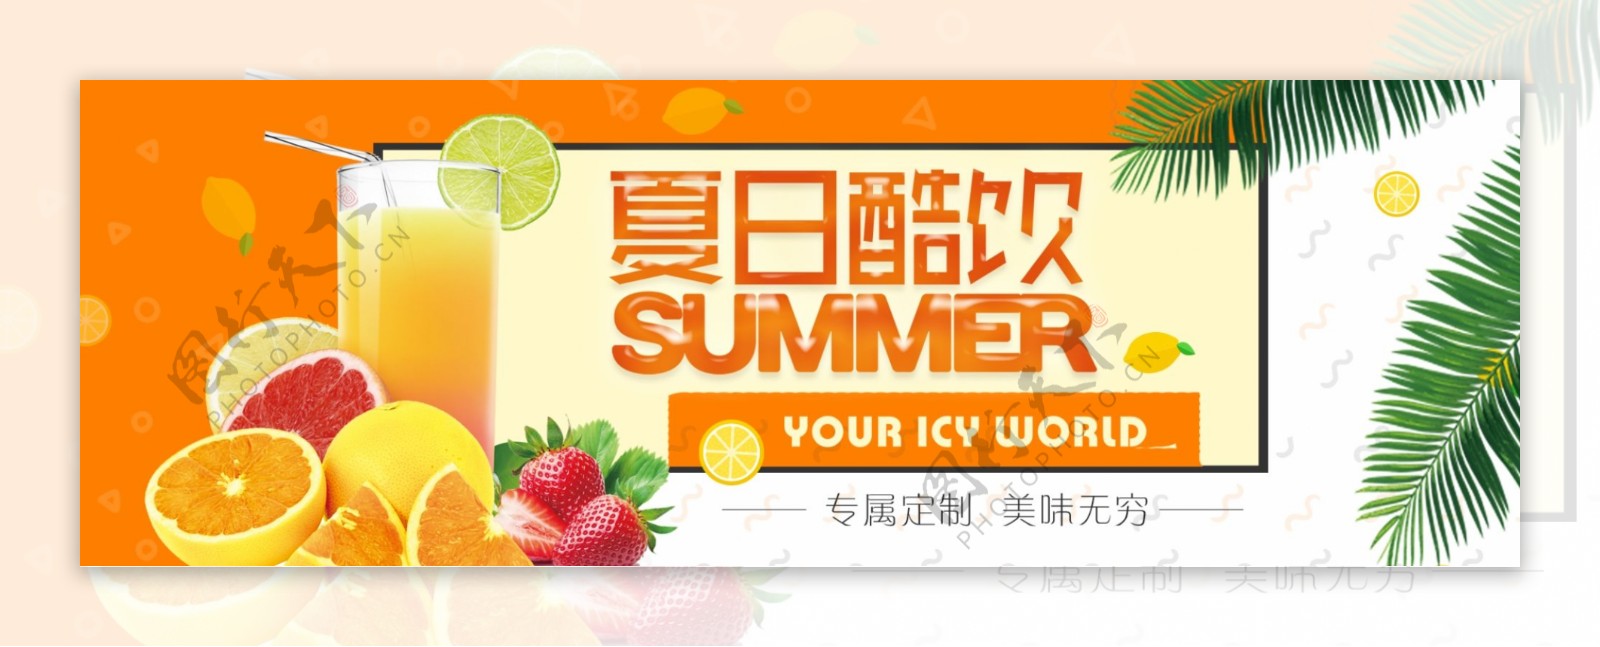 电商天猫淘宝夏季生鲜水果饮品美食促销海报